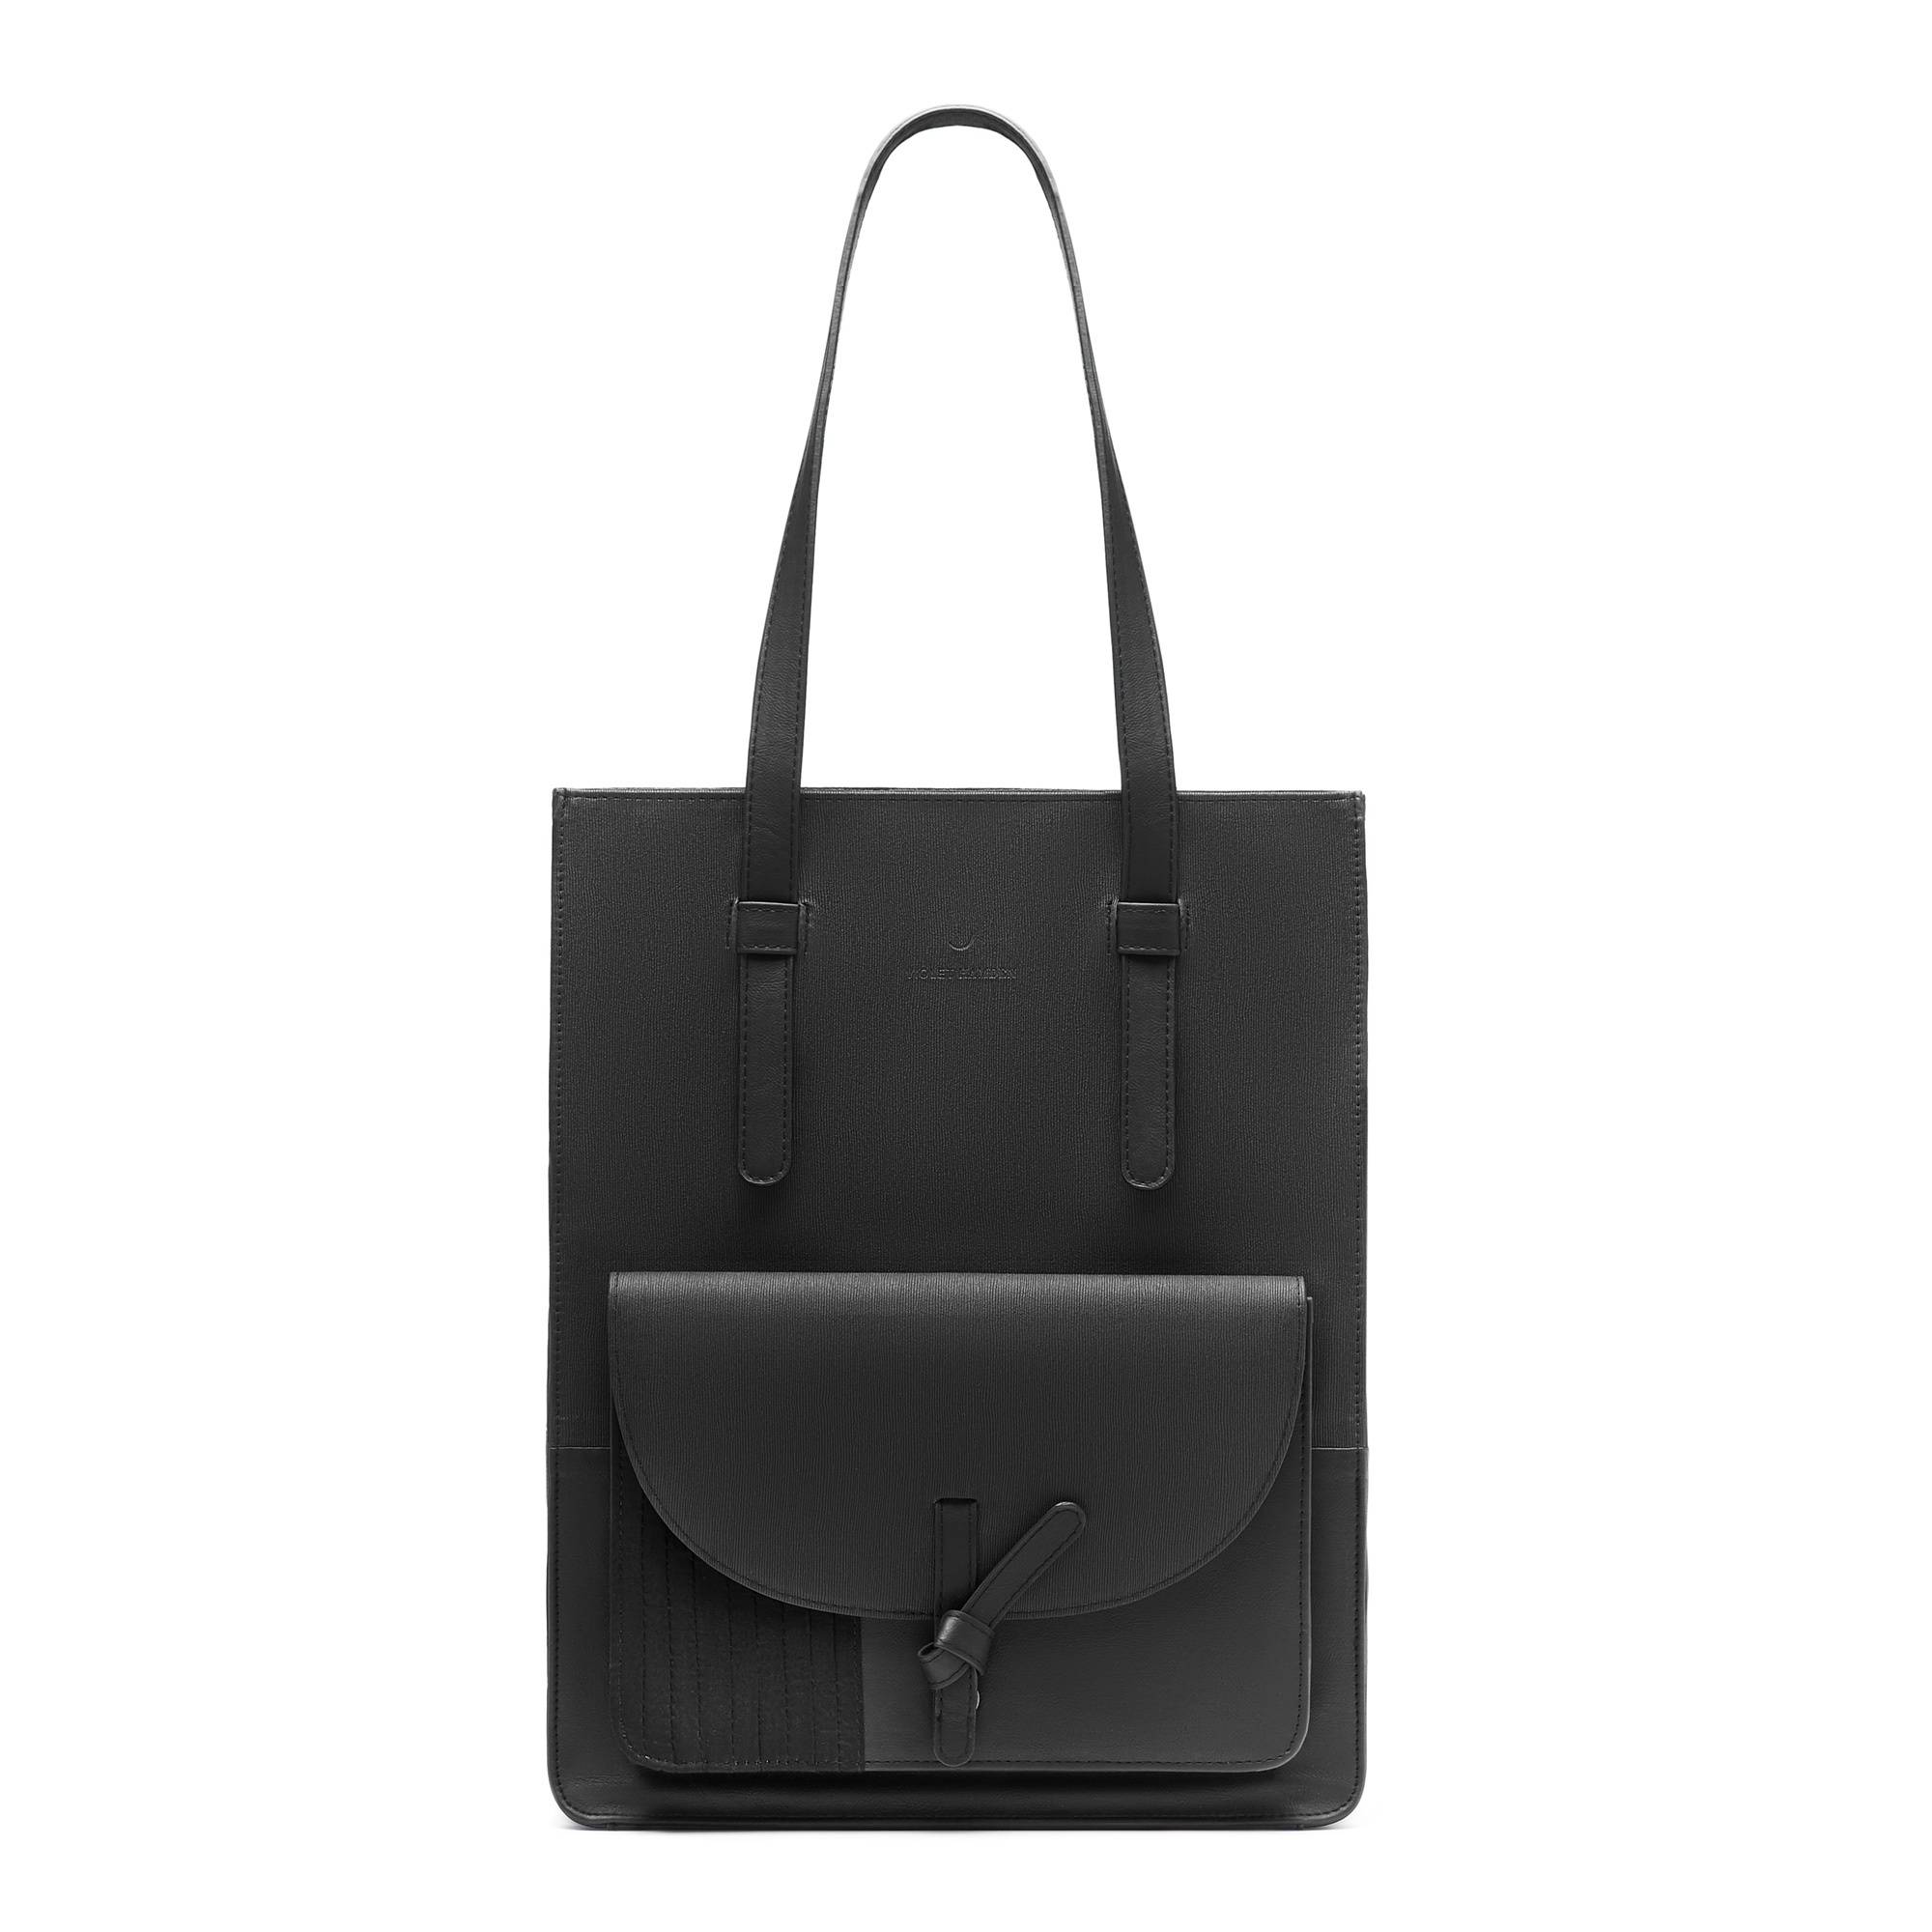 Essential Bag sort indkøbstaske